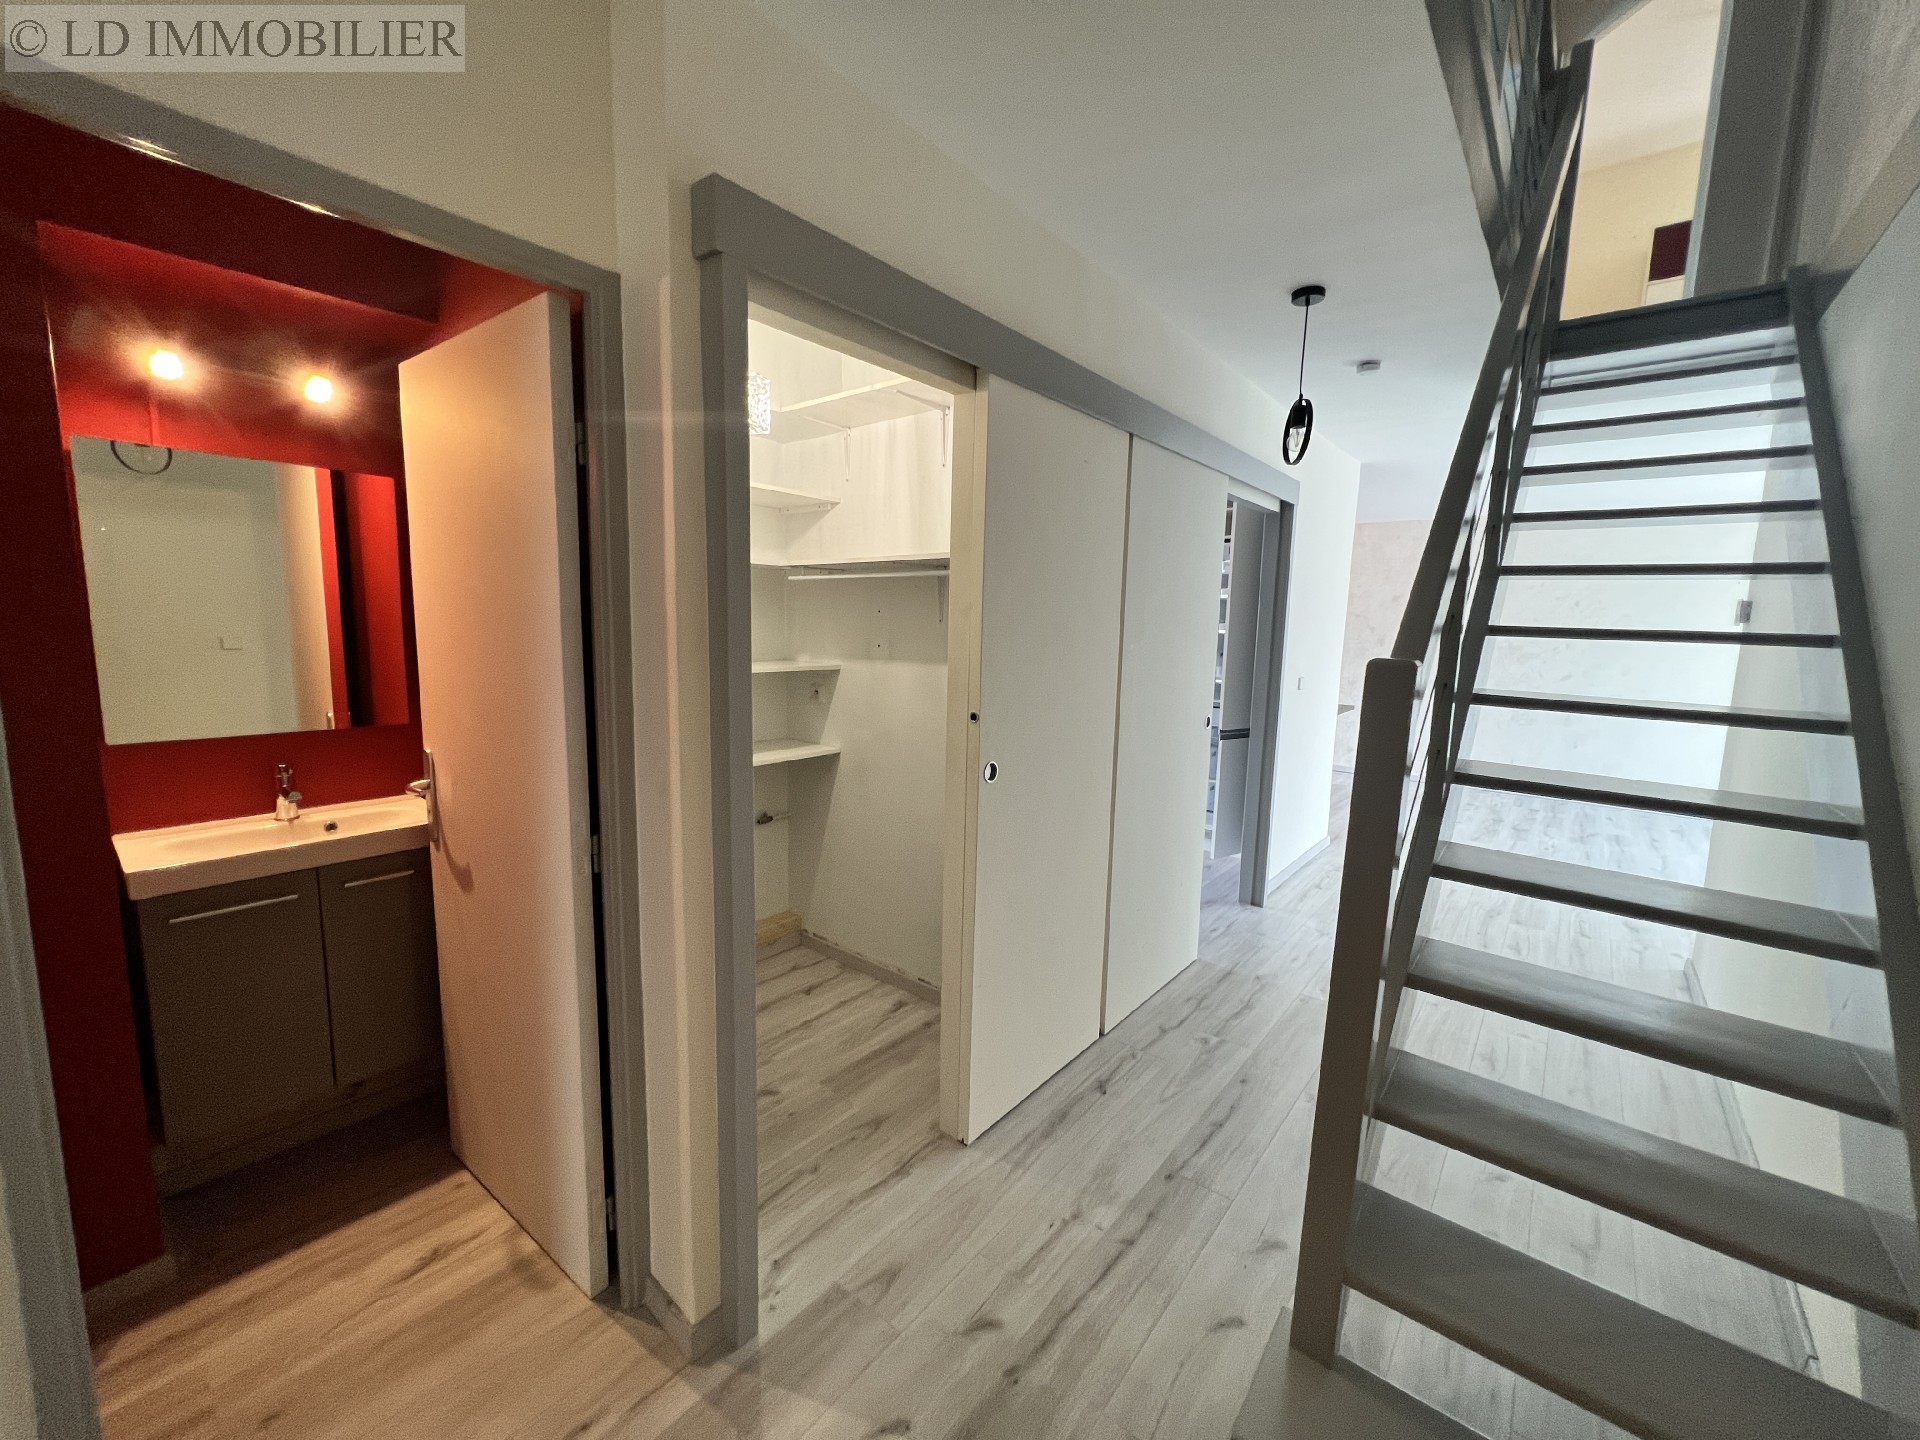 Vente appartement - CHALLES LES EAUX 98 m², 5 pièces